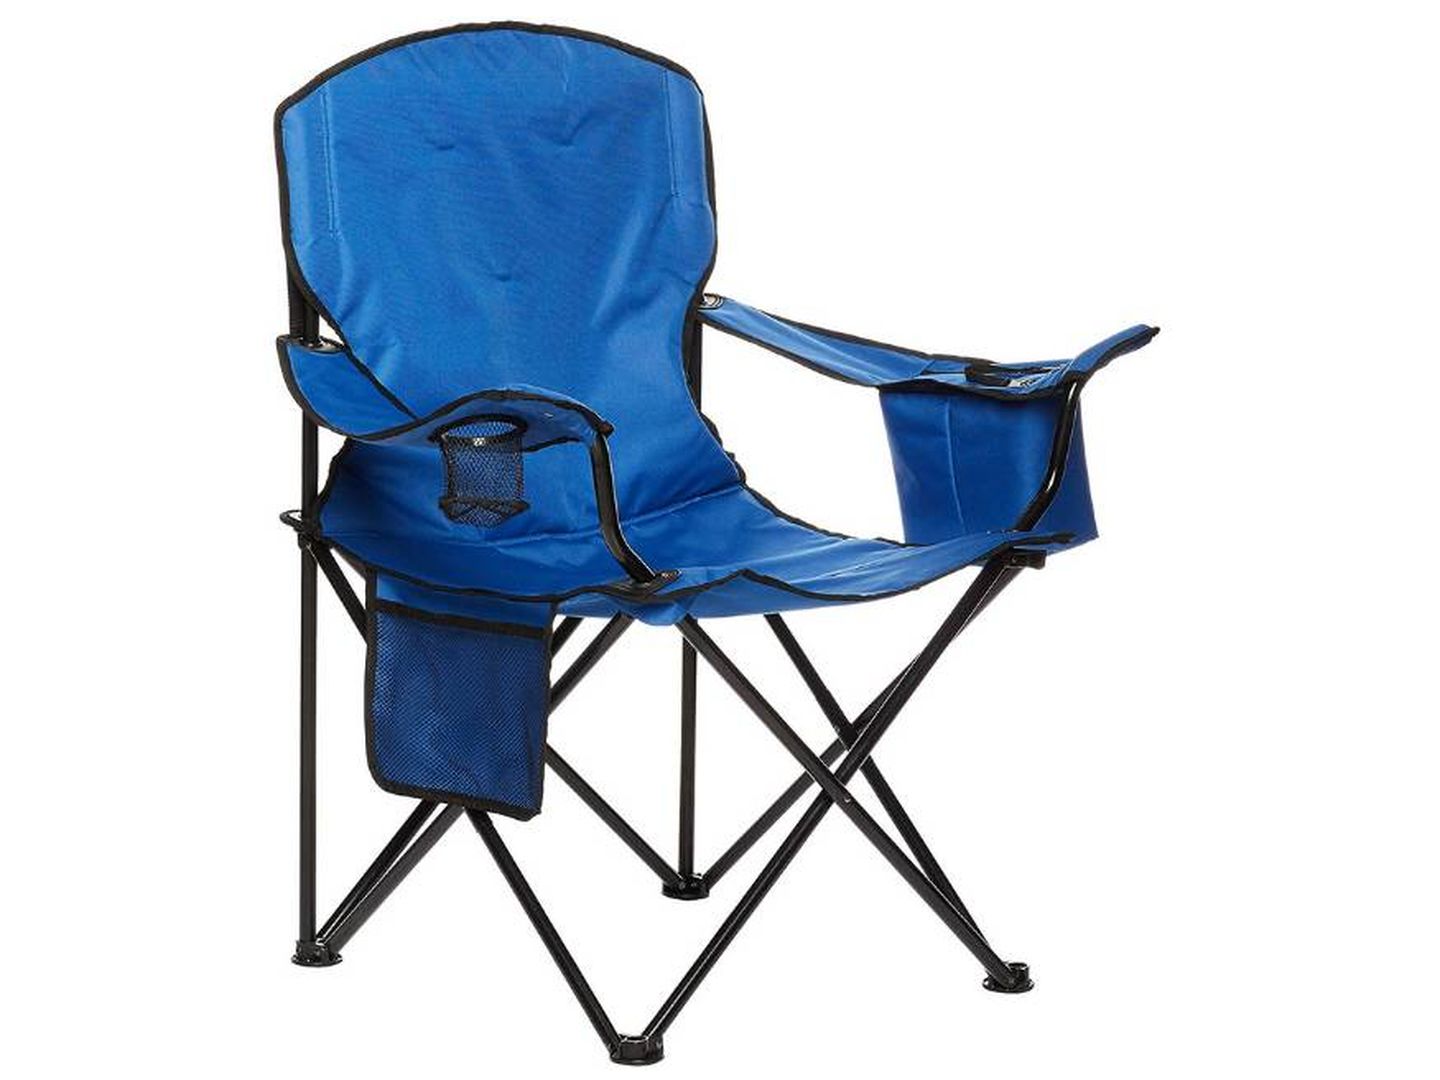 La mejor silla de camping con enfriador de Amazon Basics